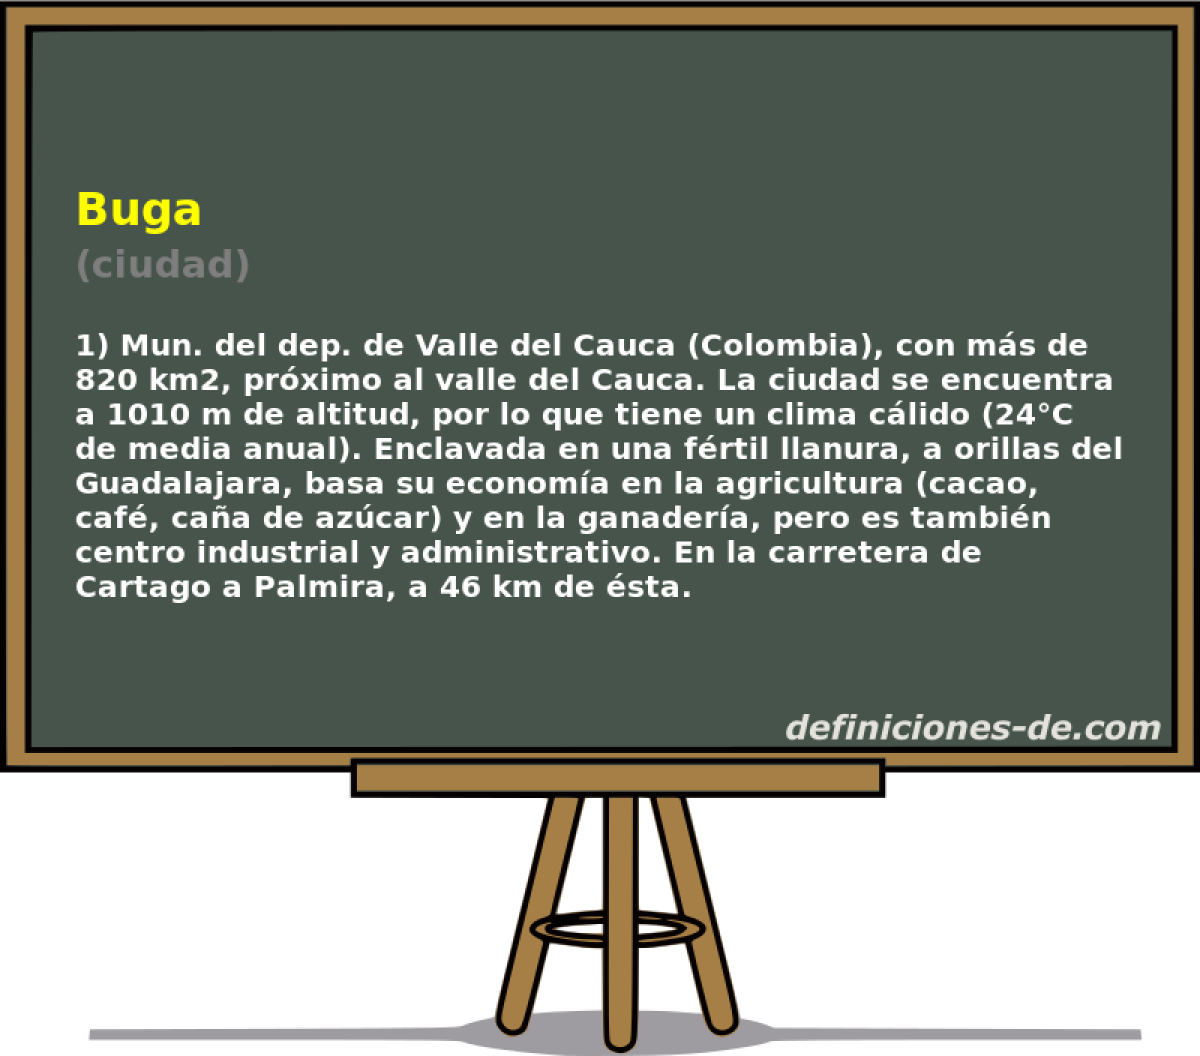 Buga (ciudad)